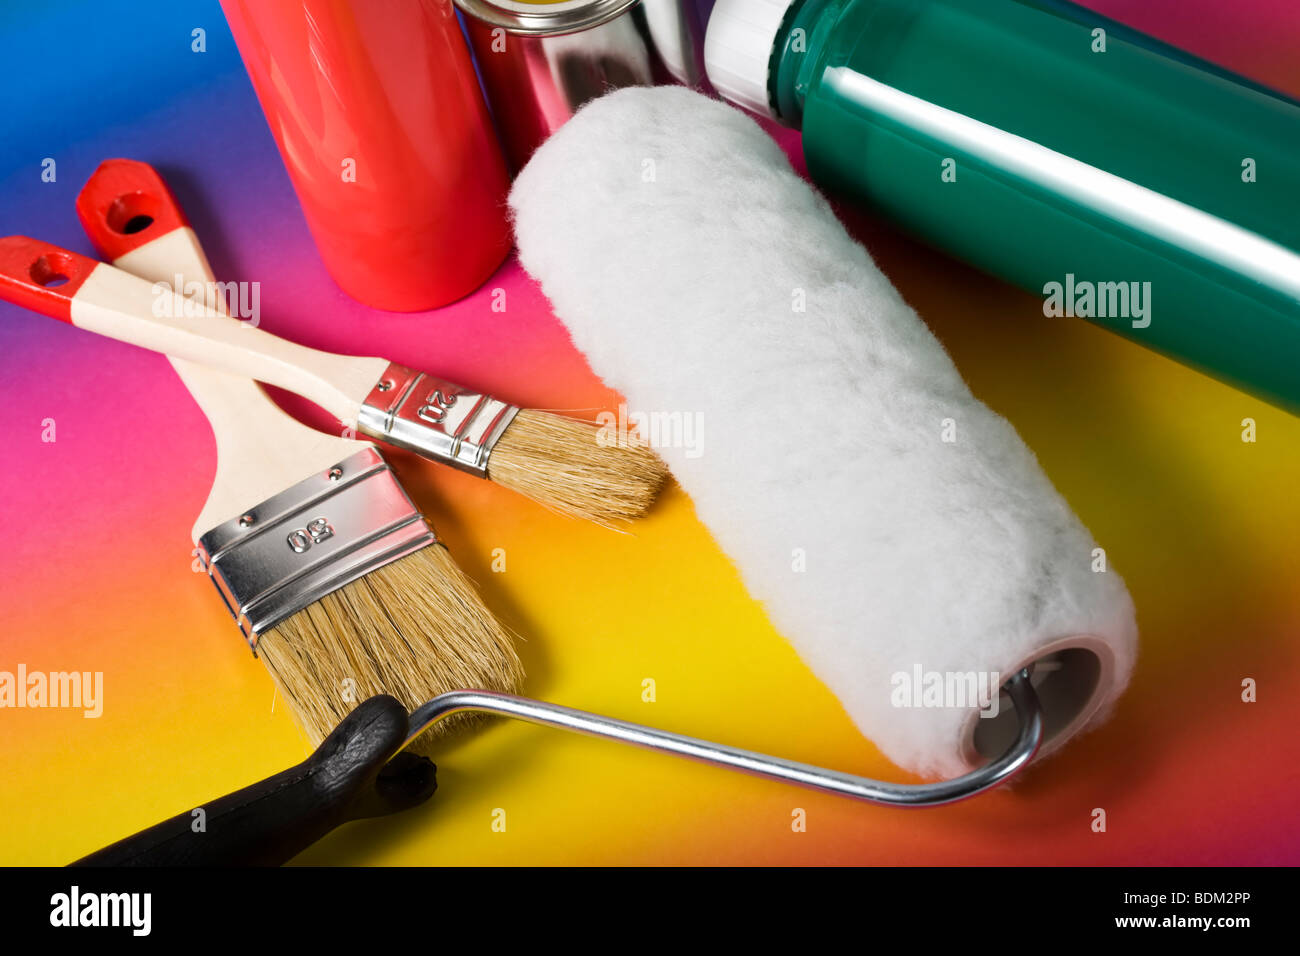 Vielzahl von Lackieranlagen - Pinsel, Farbroller, Farbe, Lack kann - auf Regenbogen farbig hinterlegt Stockfoto